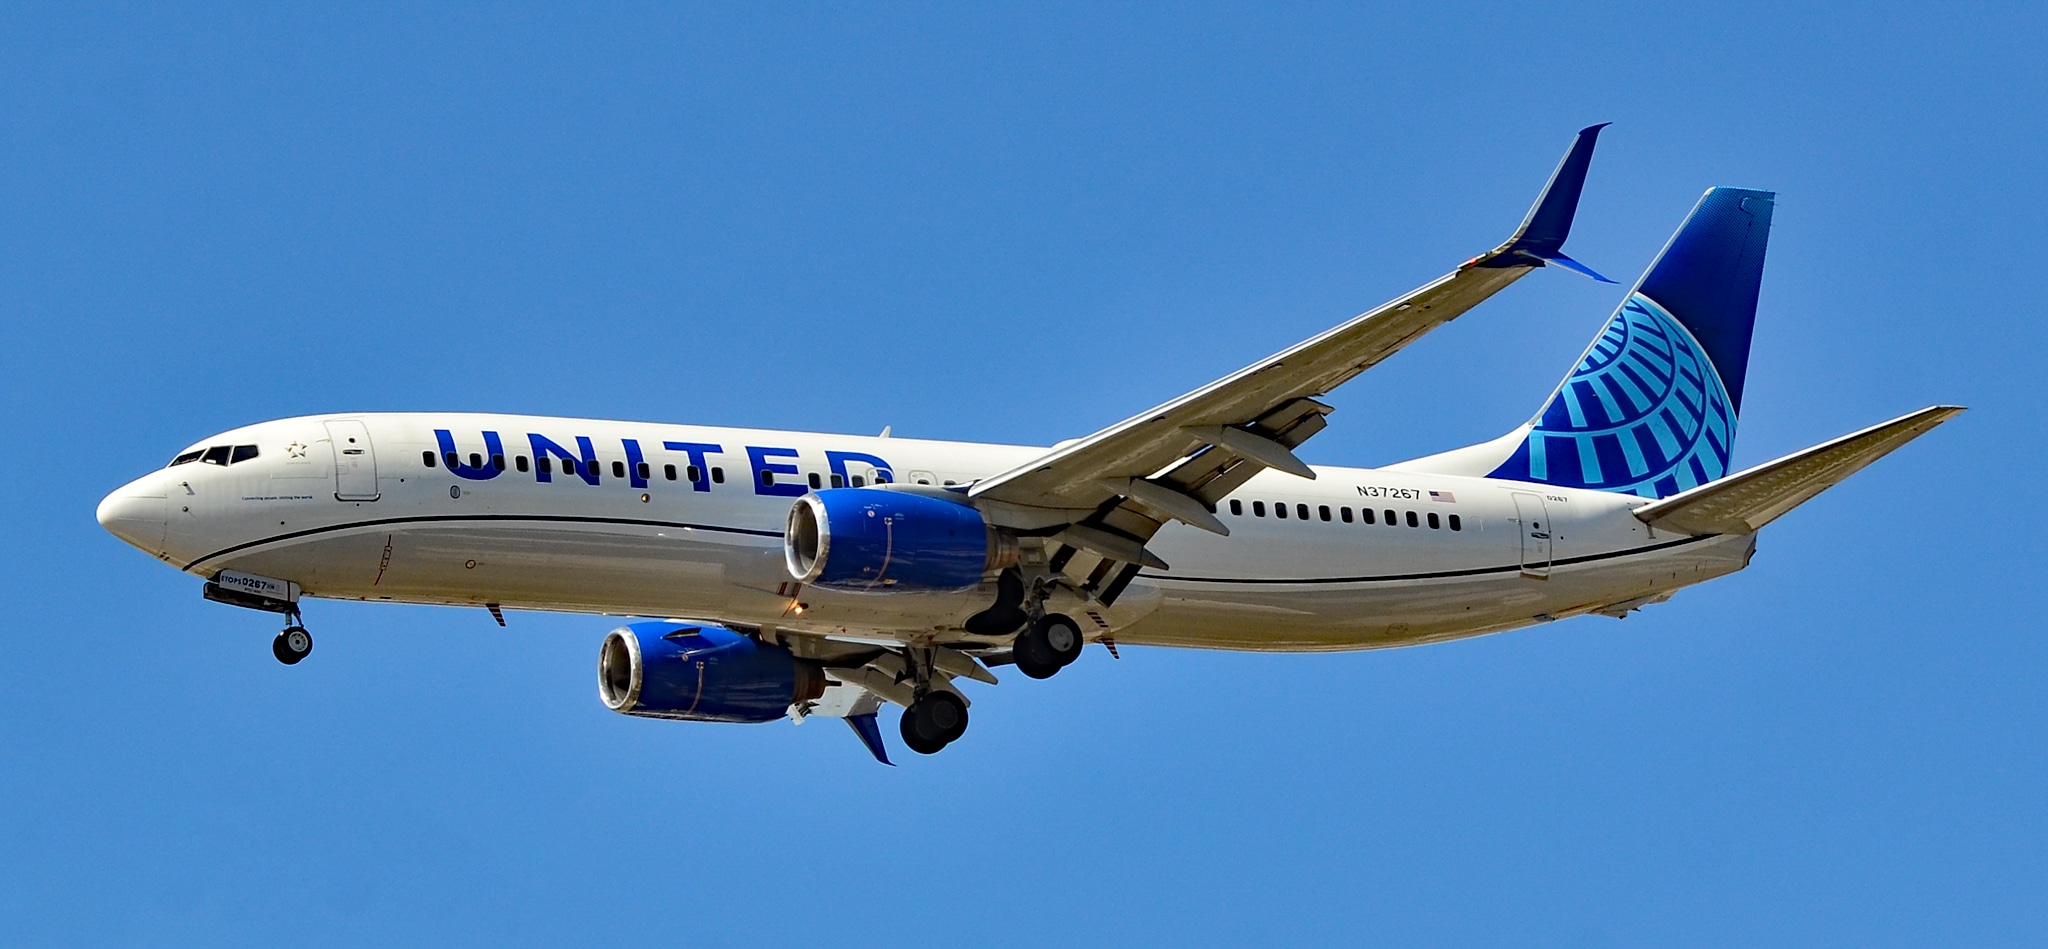 Lot United Airlines został przekierowany z powodu pękniętej przedniej szyby w Boeingu 737-800